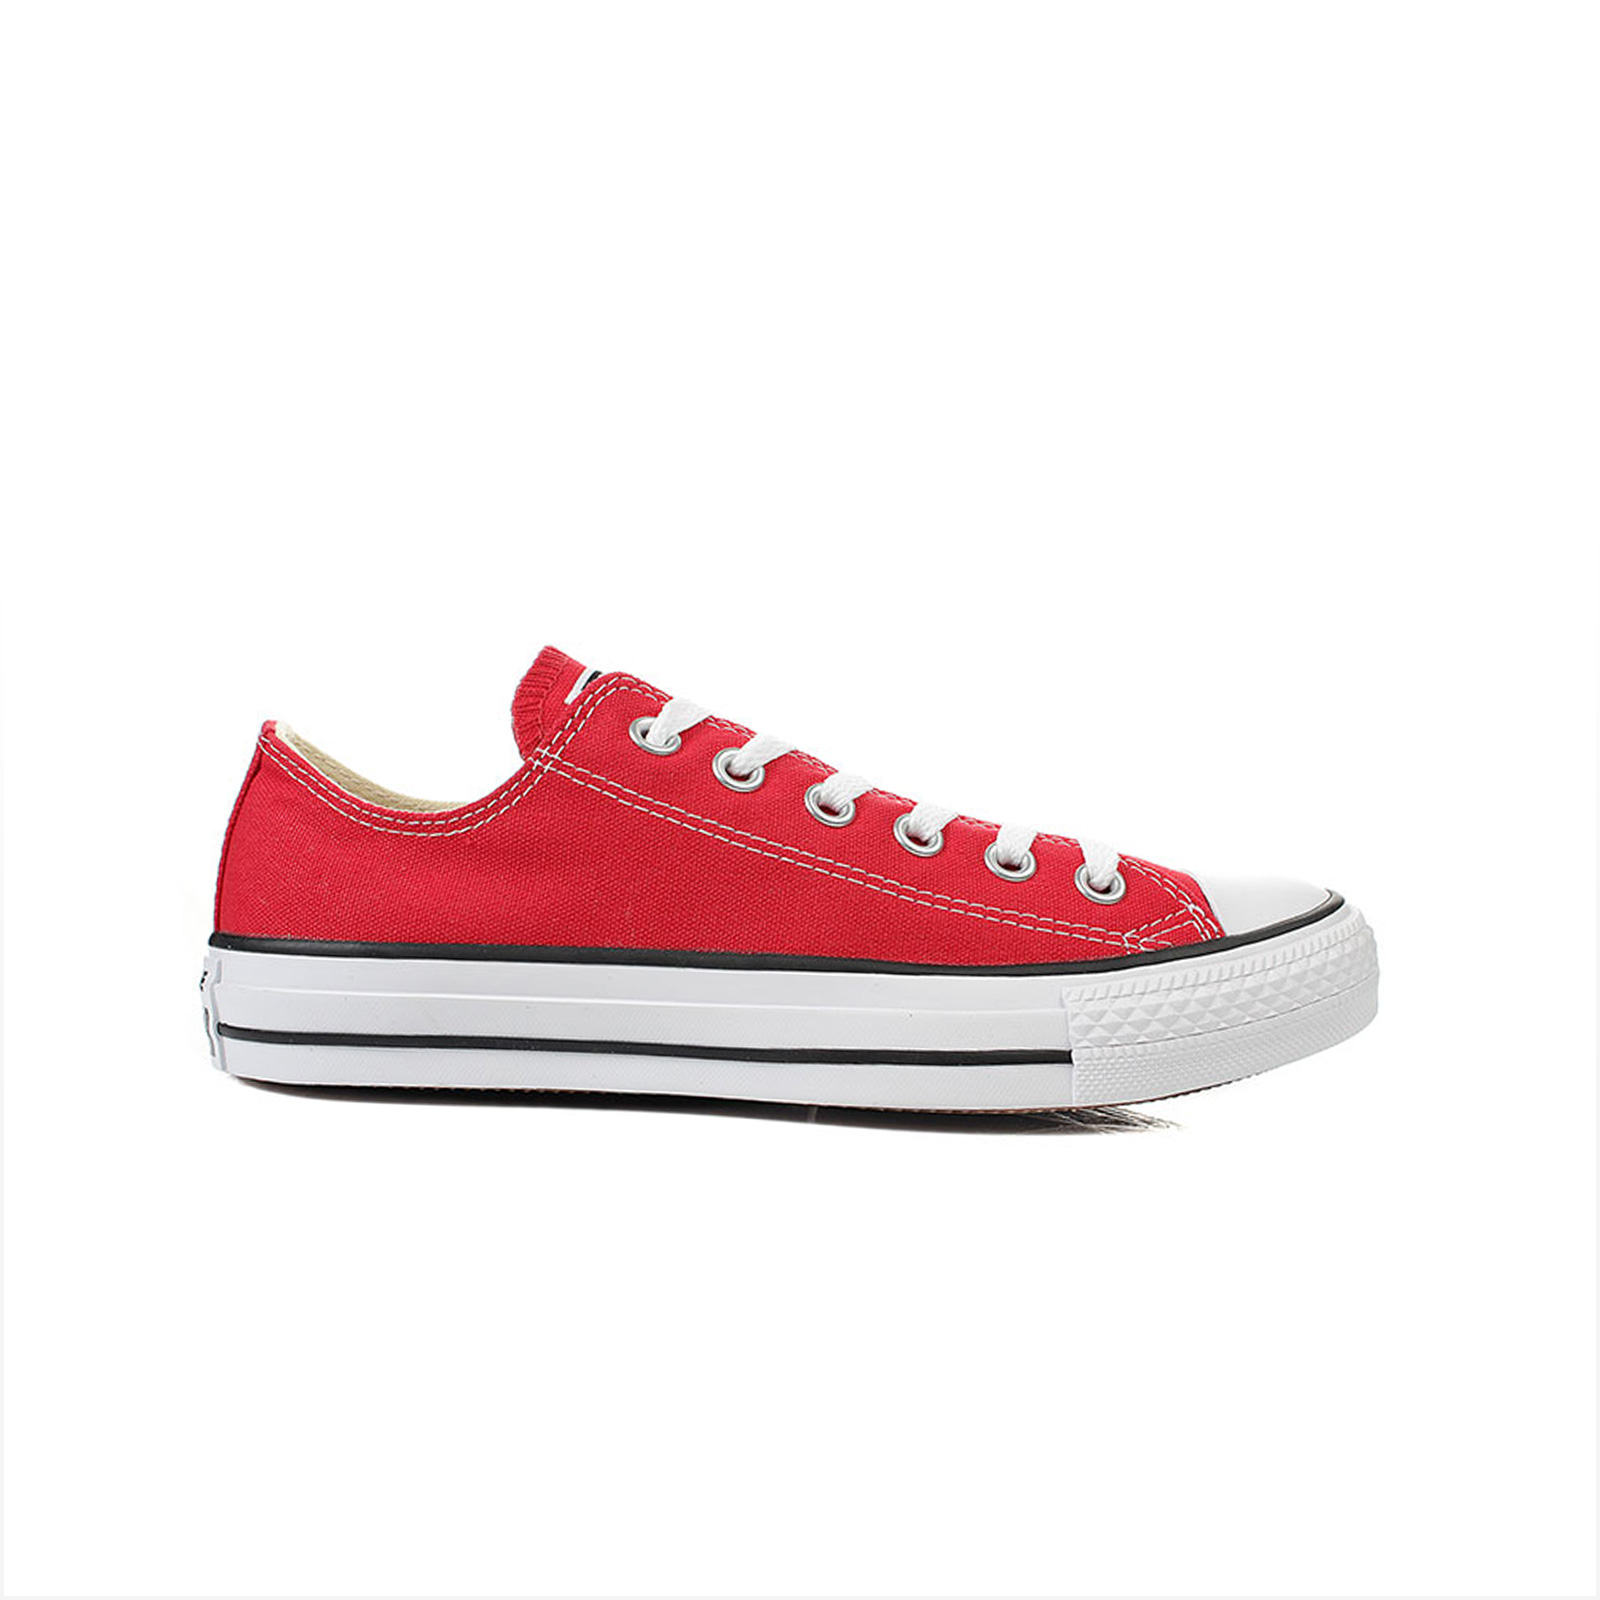 Ανδρικά > Παπούτσια > Sneaker > Παπούτσι Low Cut Converse - CHUCK TAYLOR ALL STAR - 600-RED